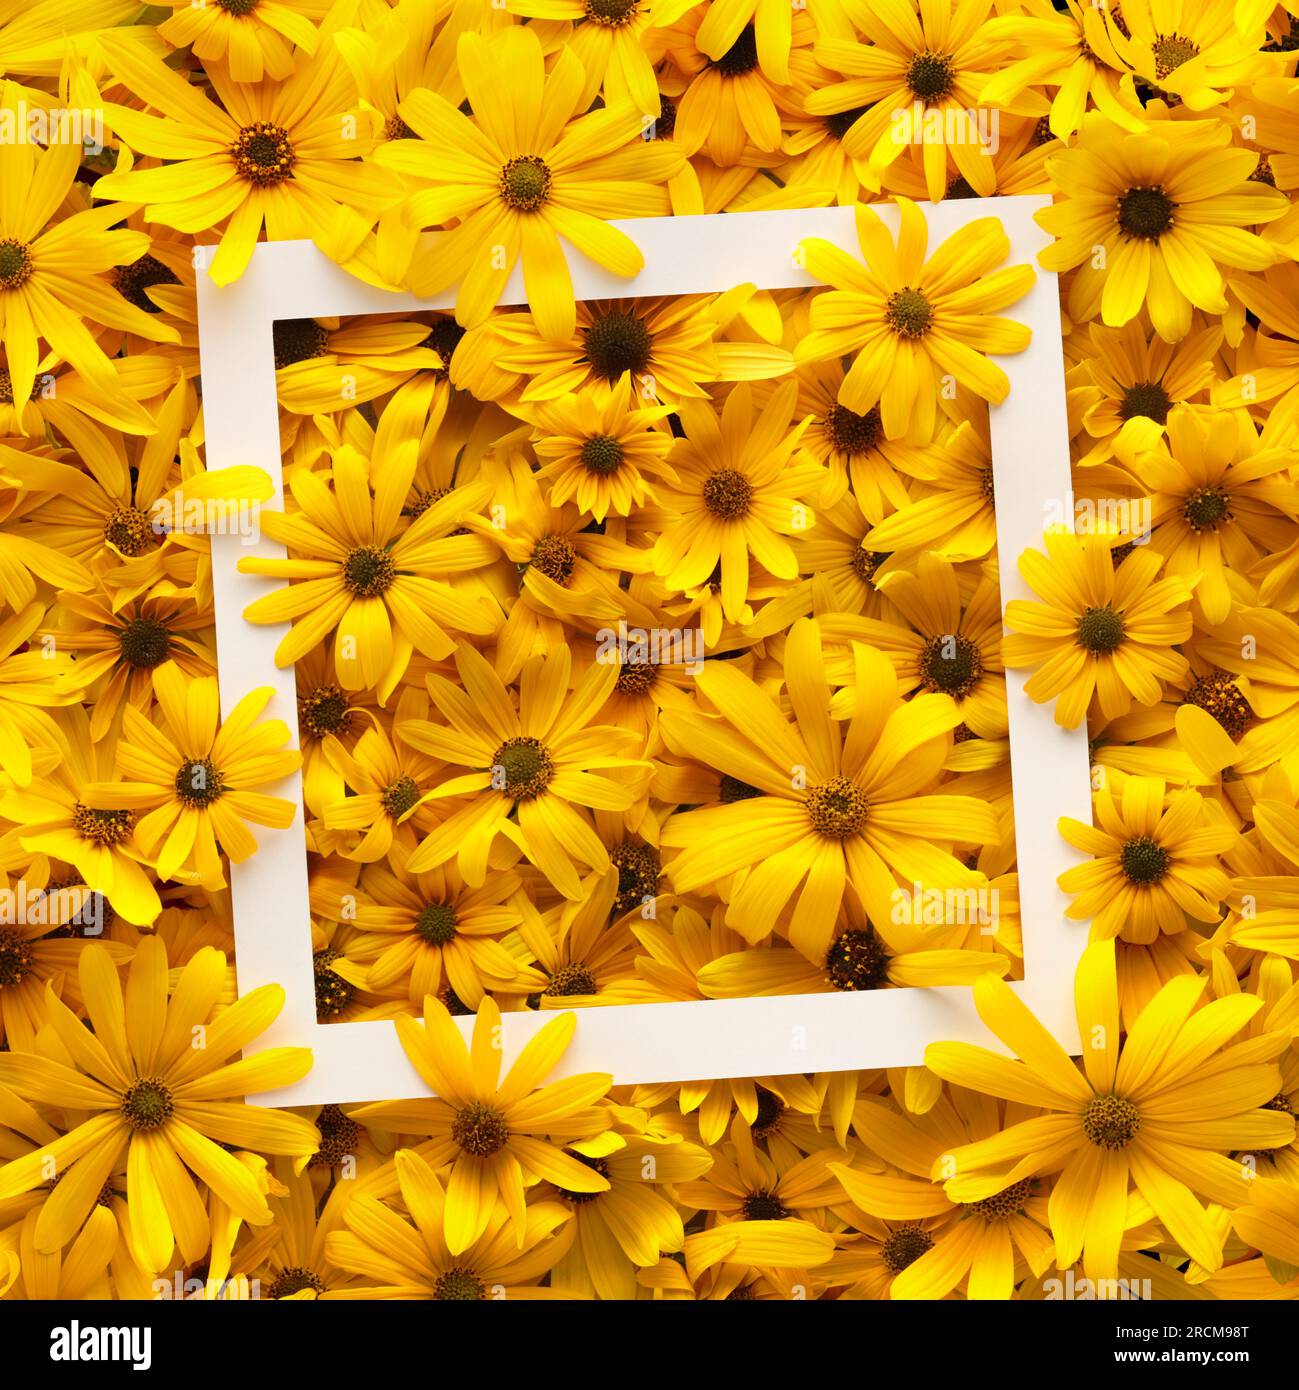 Weißer Rahmen mit hellen und warmen gelben Sommerblumen. Stockfoto